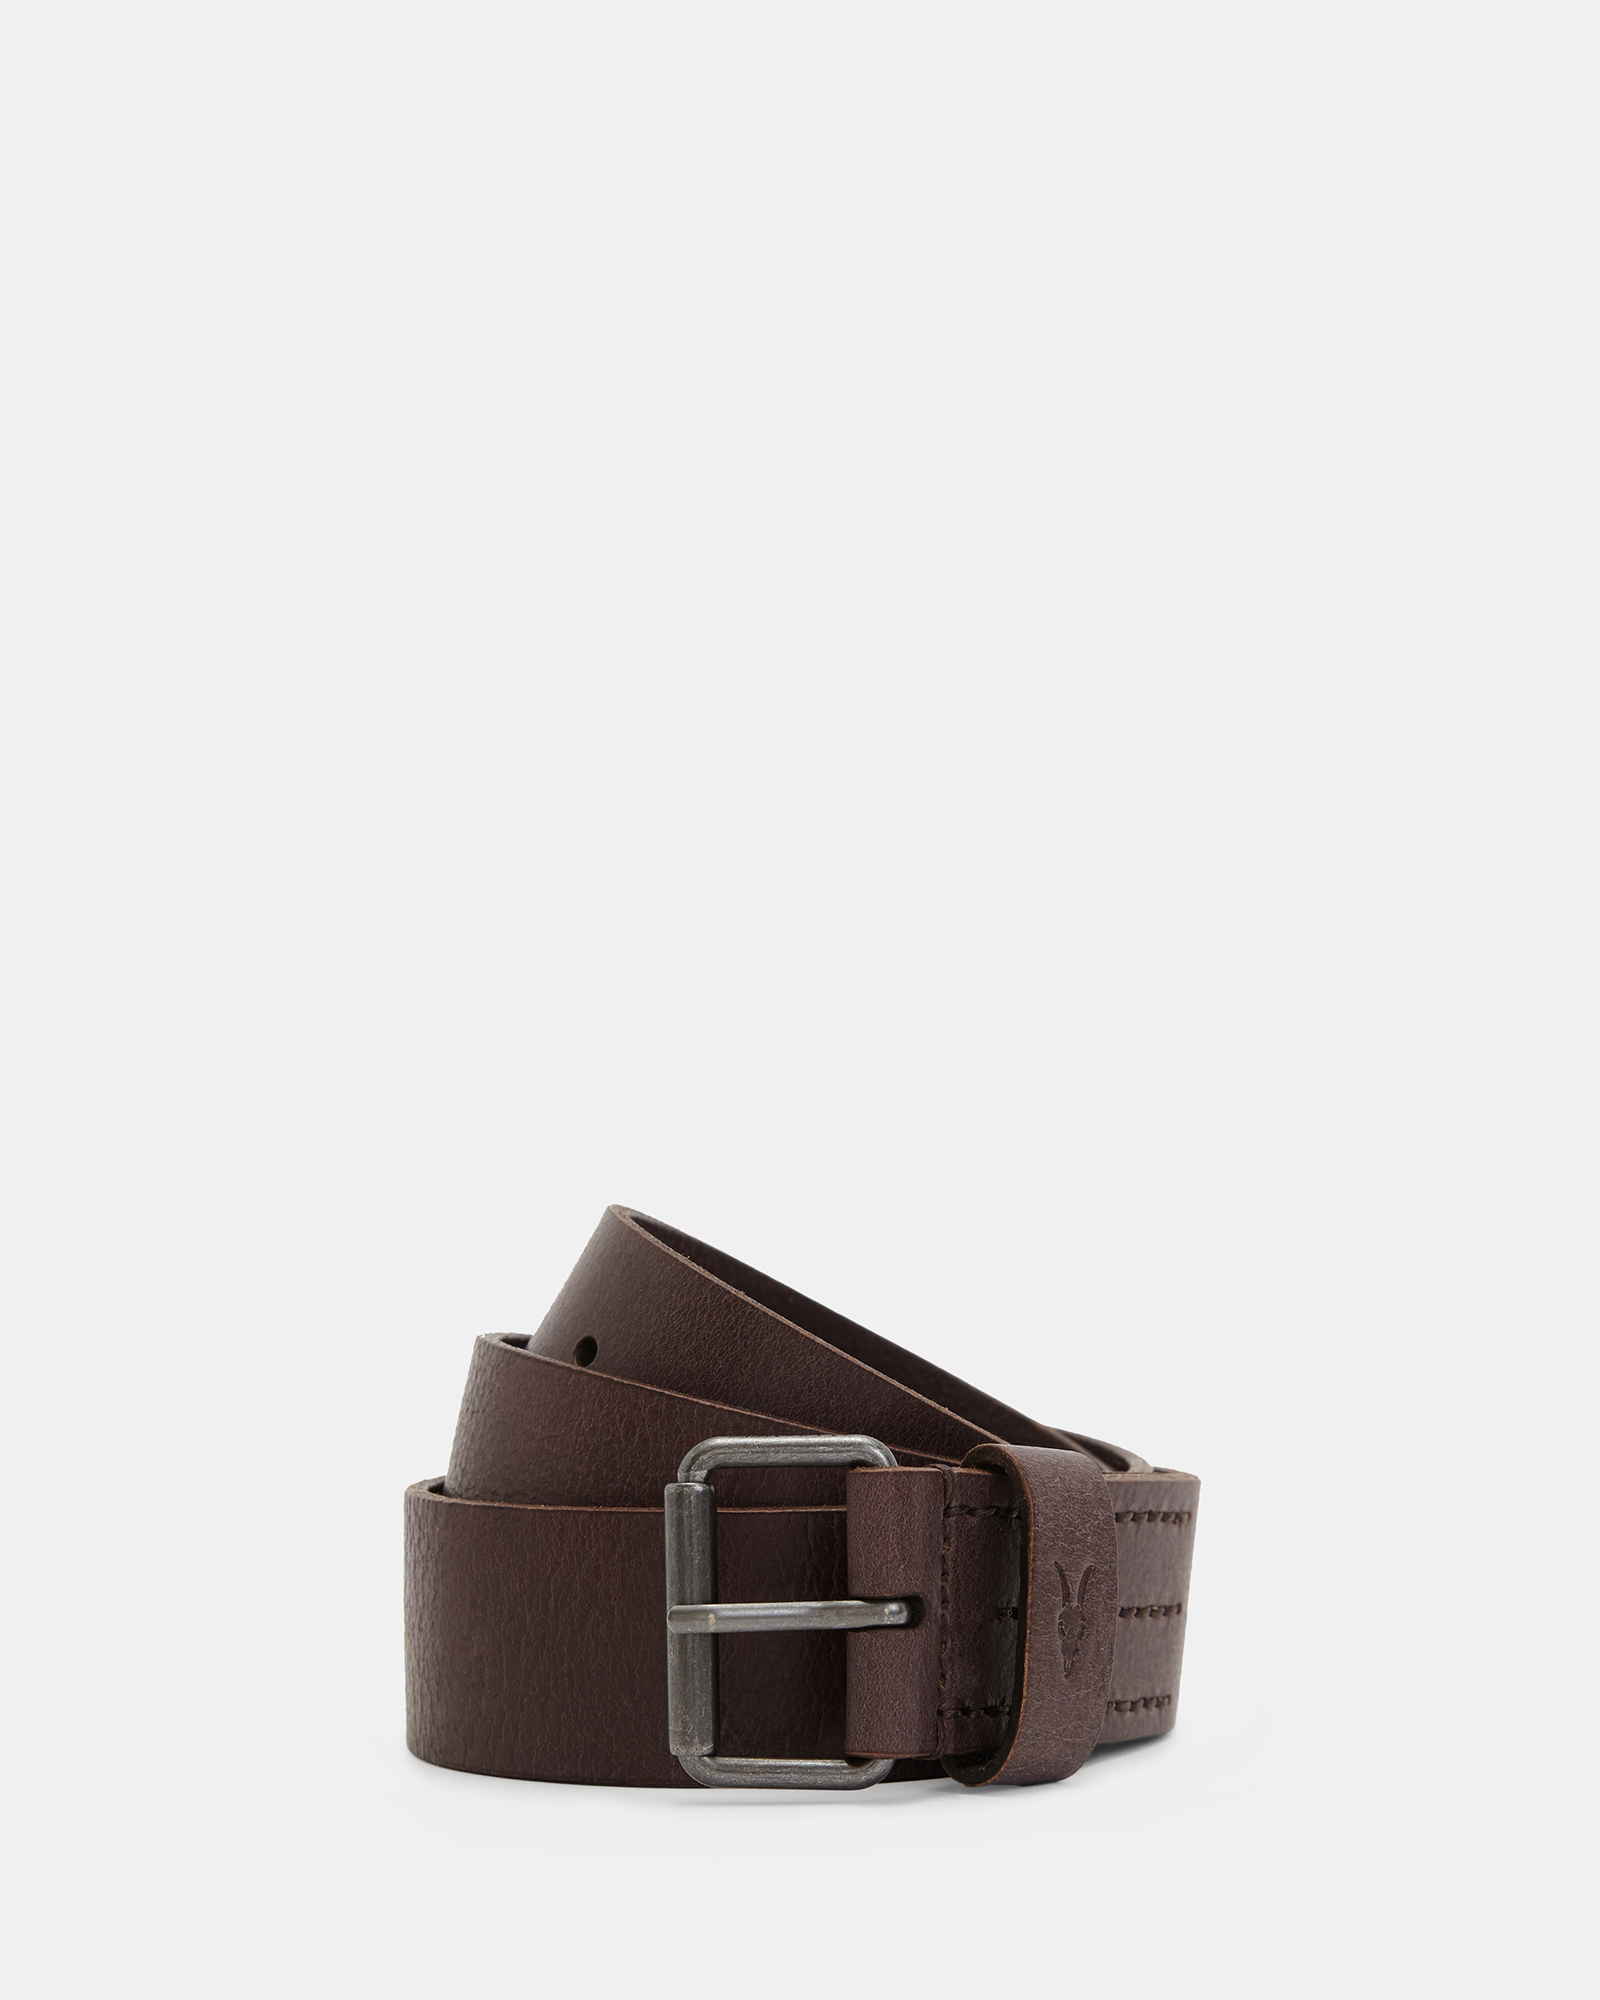 AllSaints Men's Leather Classic Dunston Belt, Brown, Size: 38